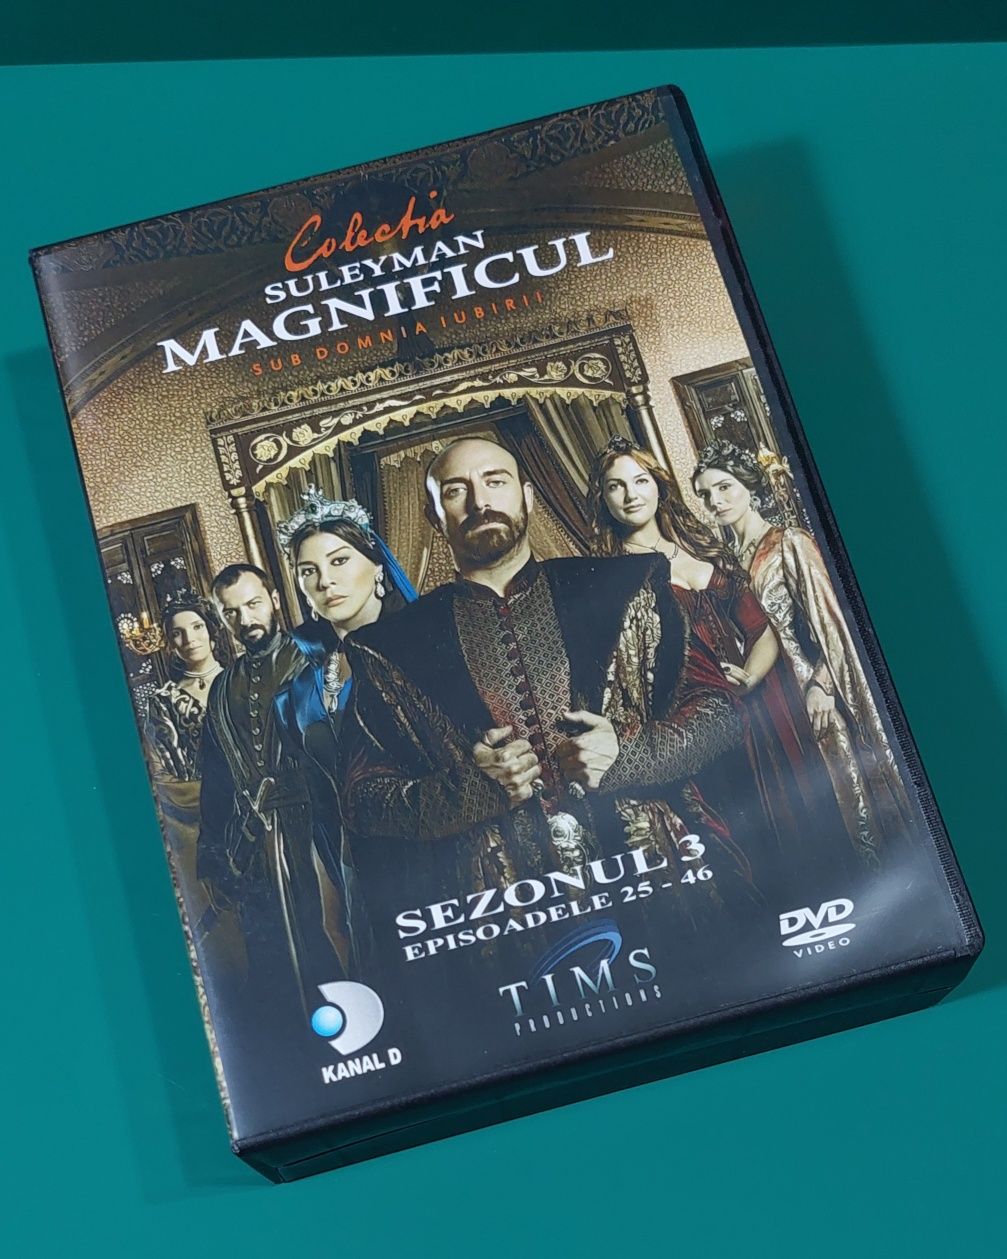 Suleyman Magnificul Sezonul 3 - 23 DVD subtitrat romana